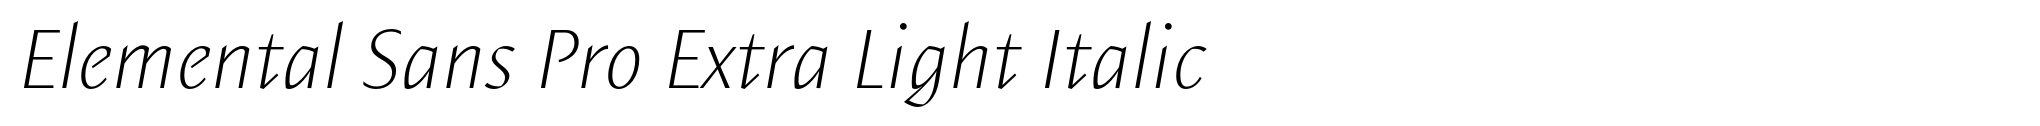 Elemental Sans Pro Extra Light Italic image